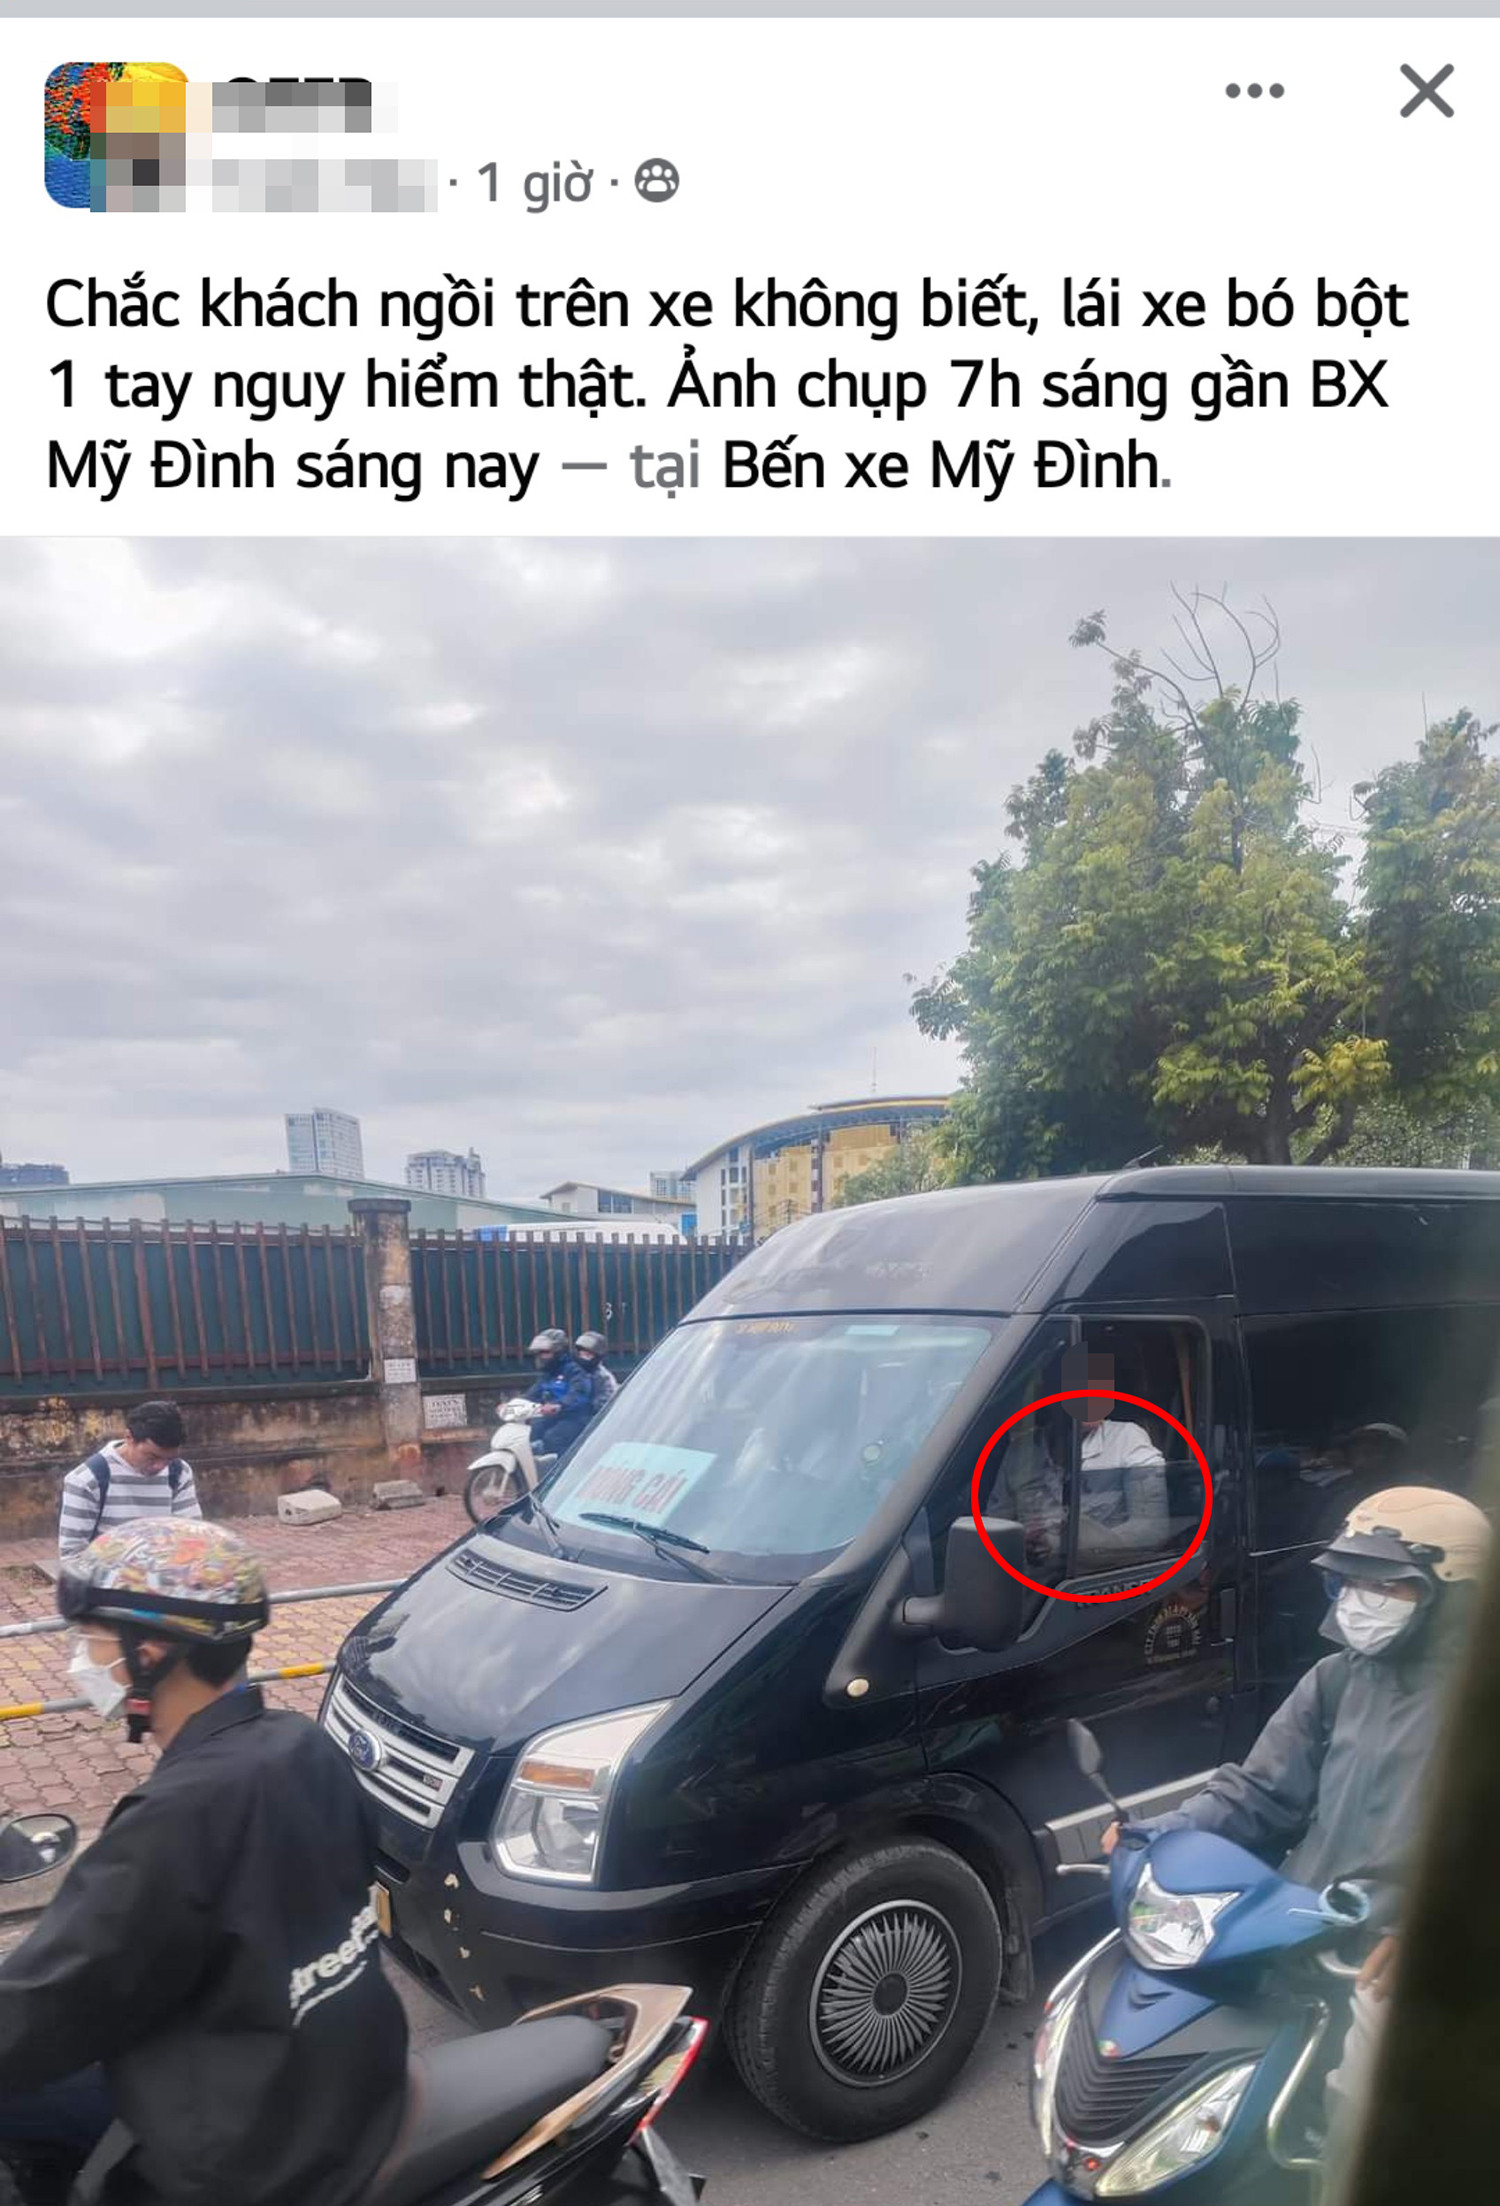 Xác minh vụ người đàn ông bó bột tay, lái xe Limousine ở Hà Nội-1